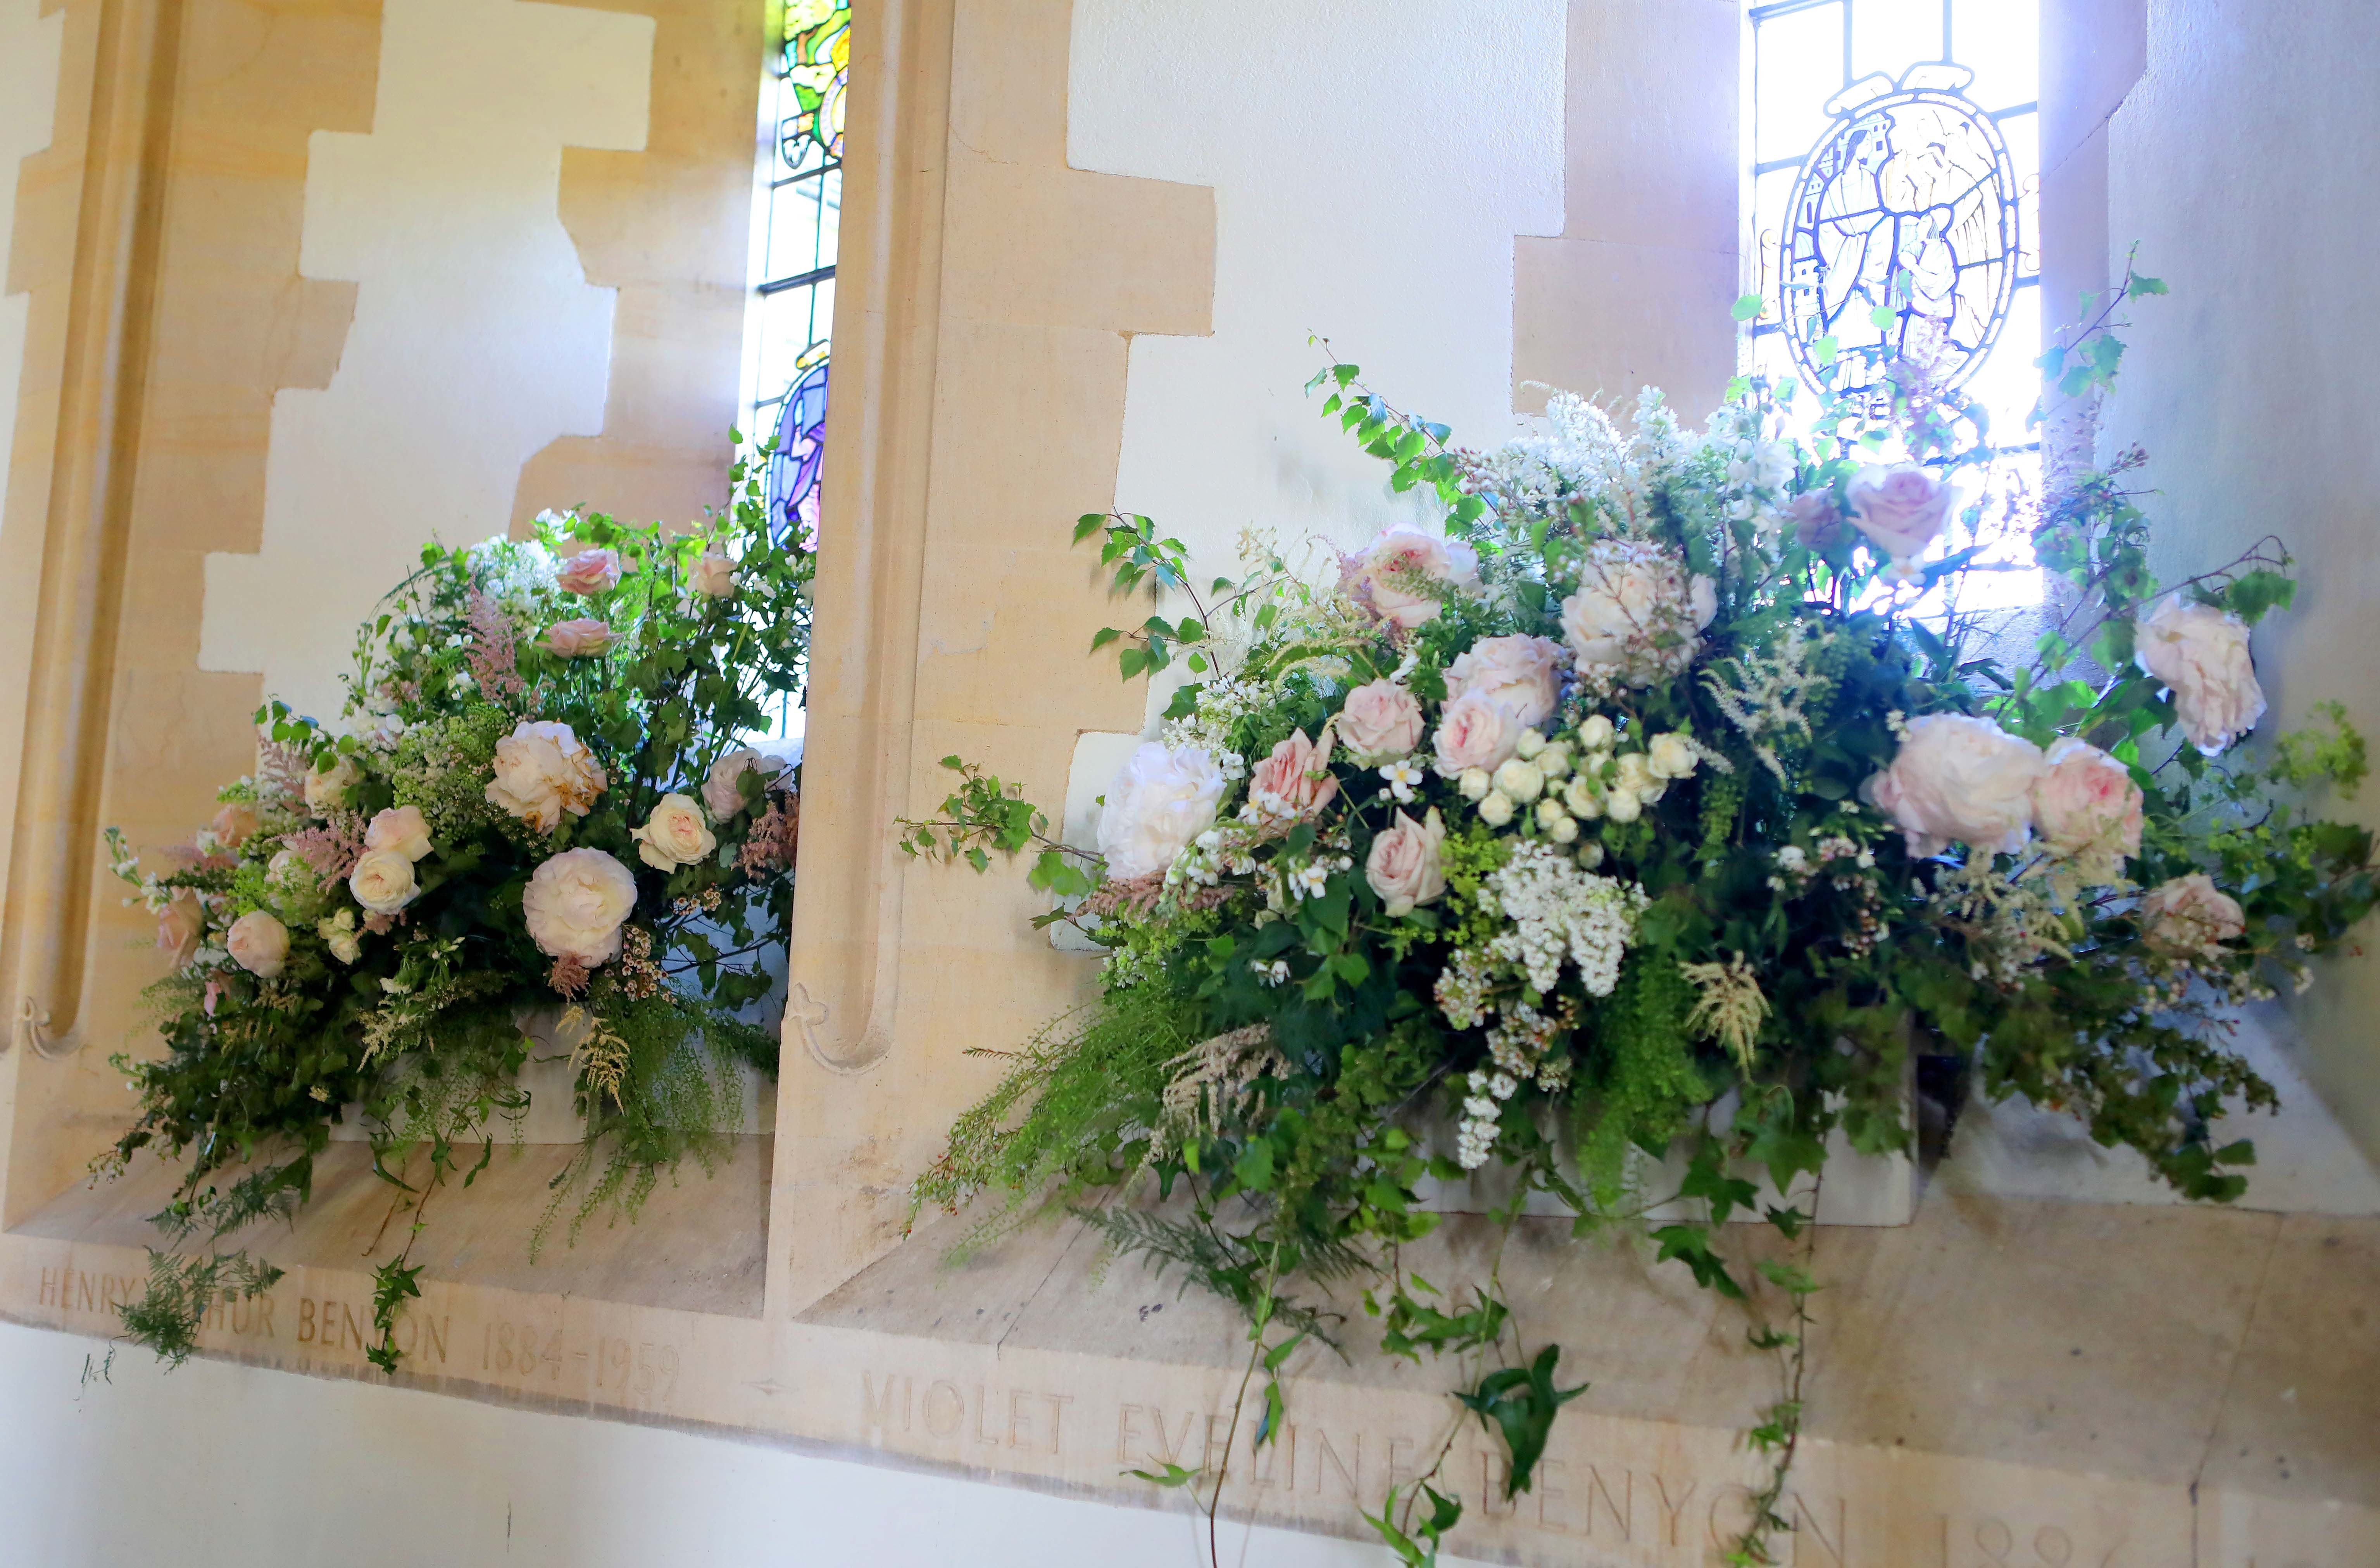 church wedding flowers